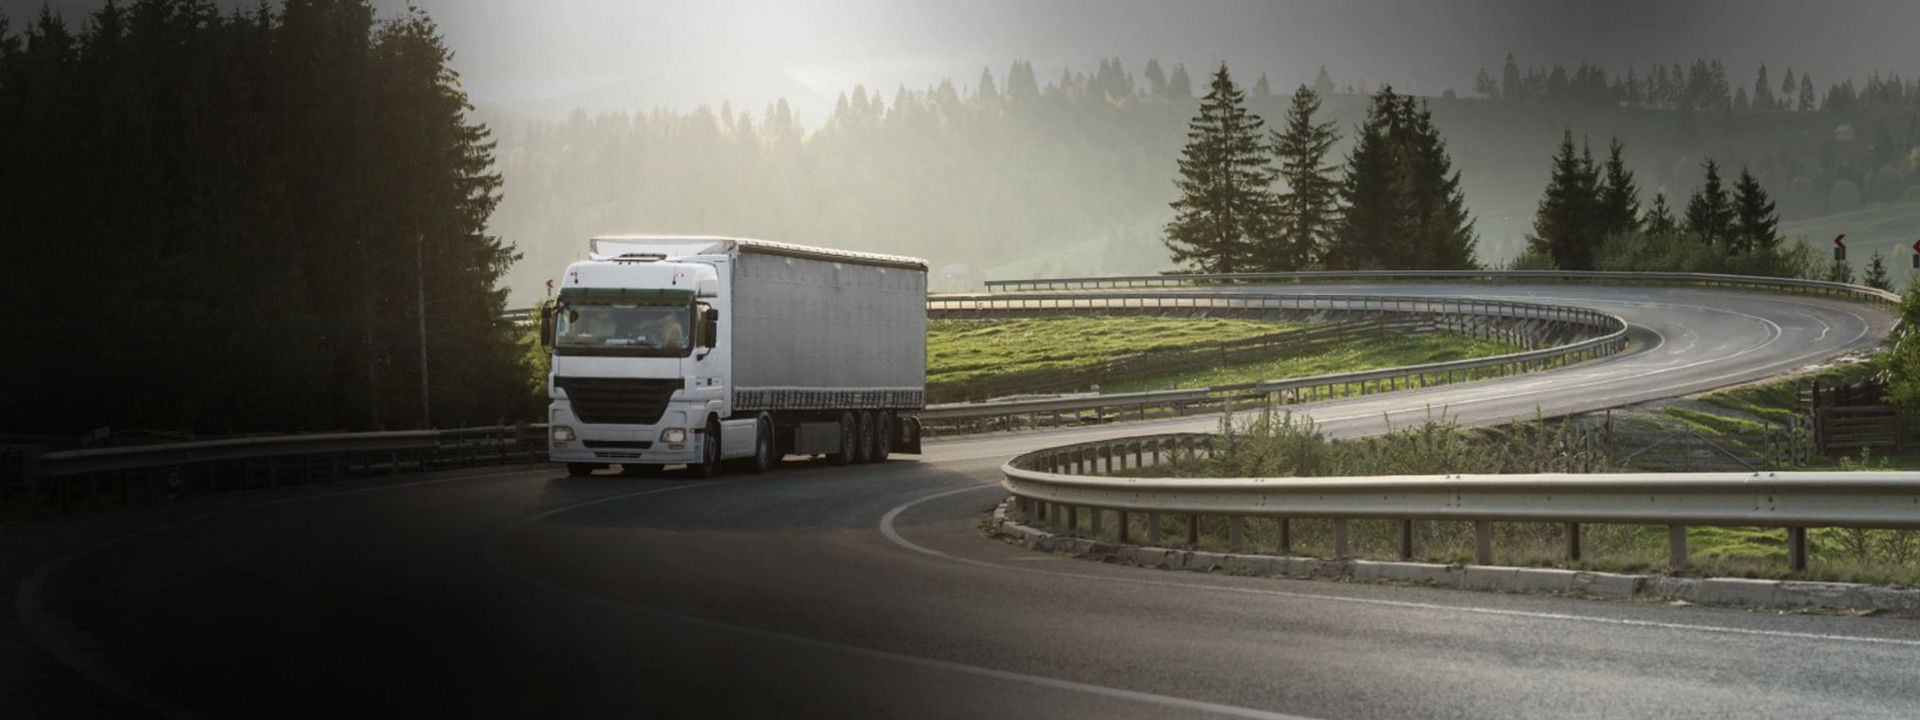 Esta imagem mostra um camião de longa distância numa estrada regional com pneus de camião de versatilidade Bridgestone.